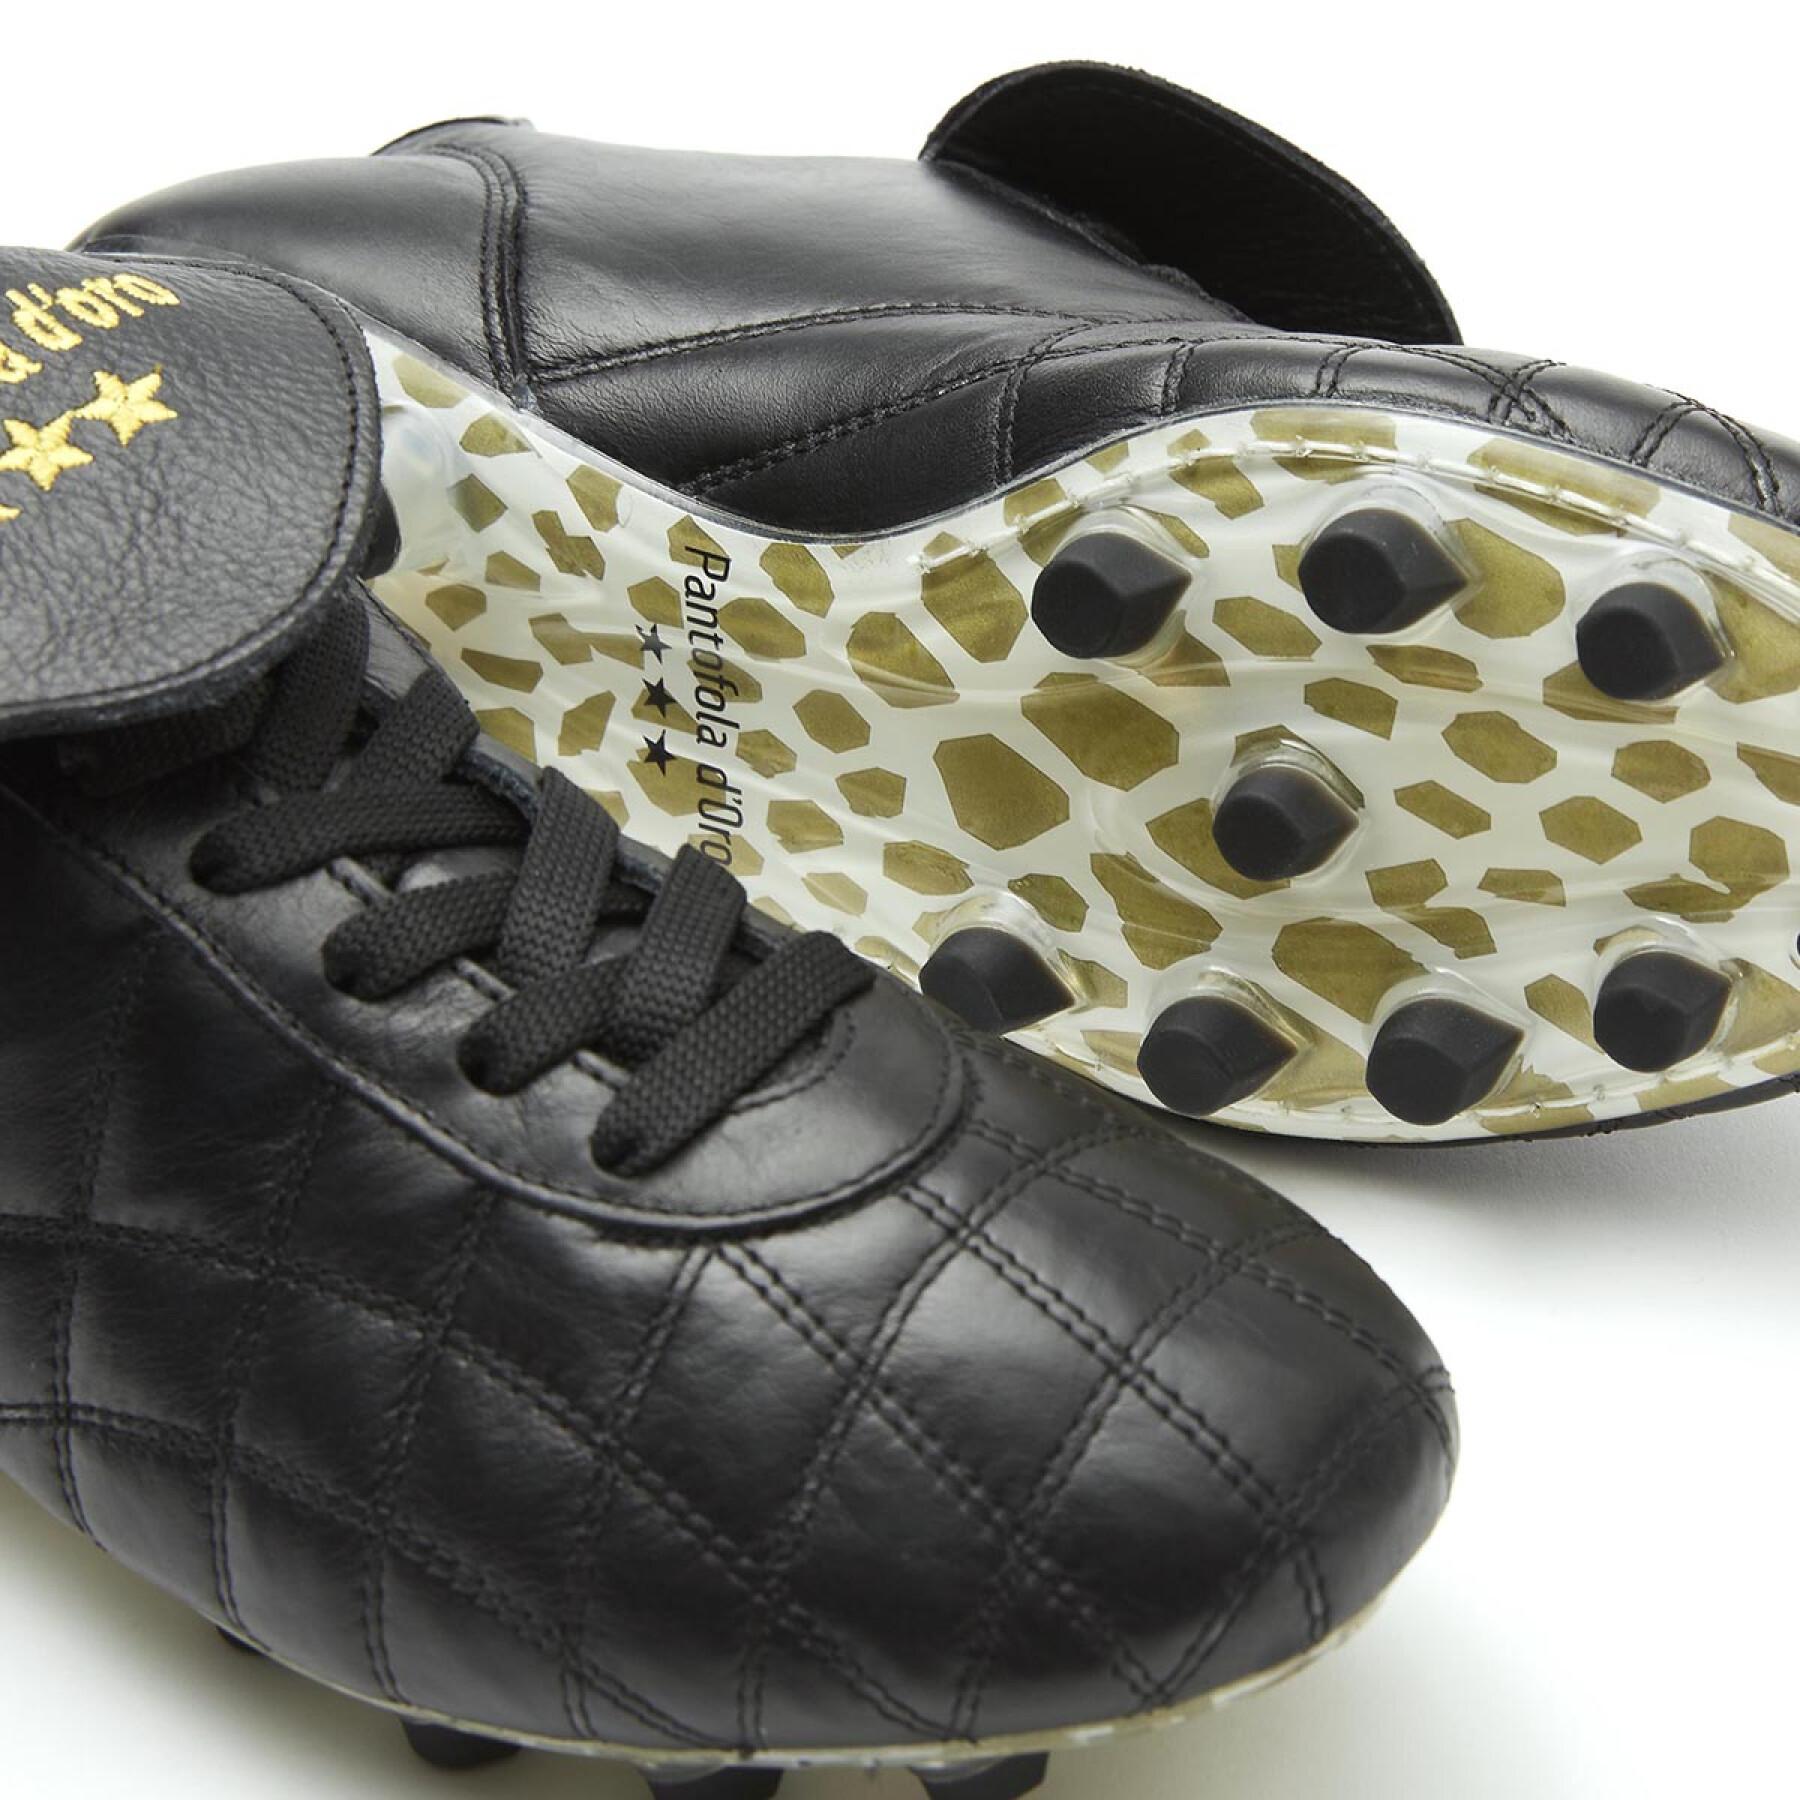 Zapatillas de fútbol Pantofola D'Oro en cuir